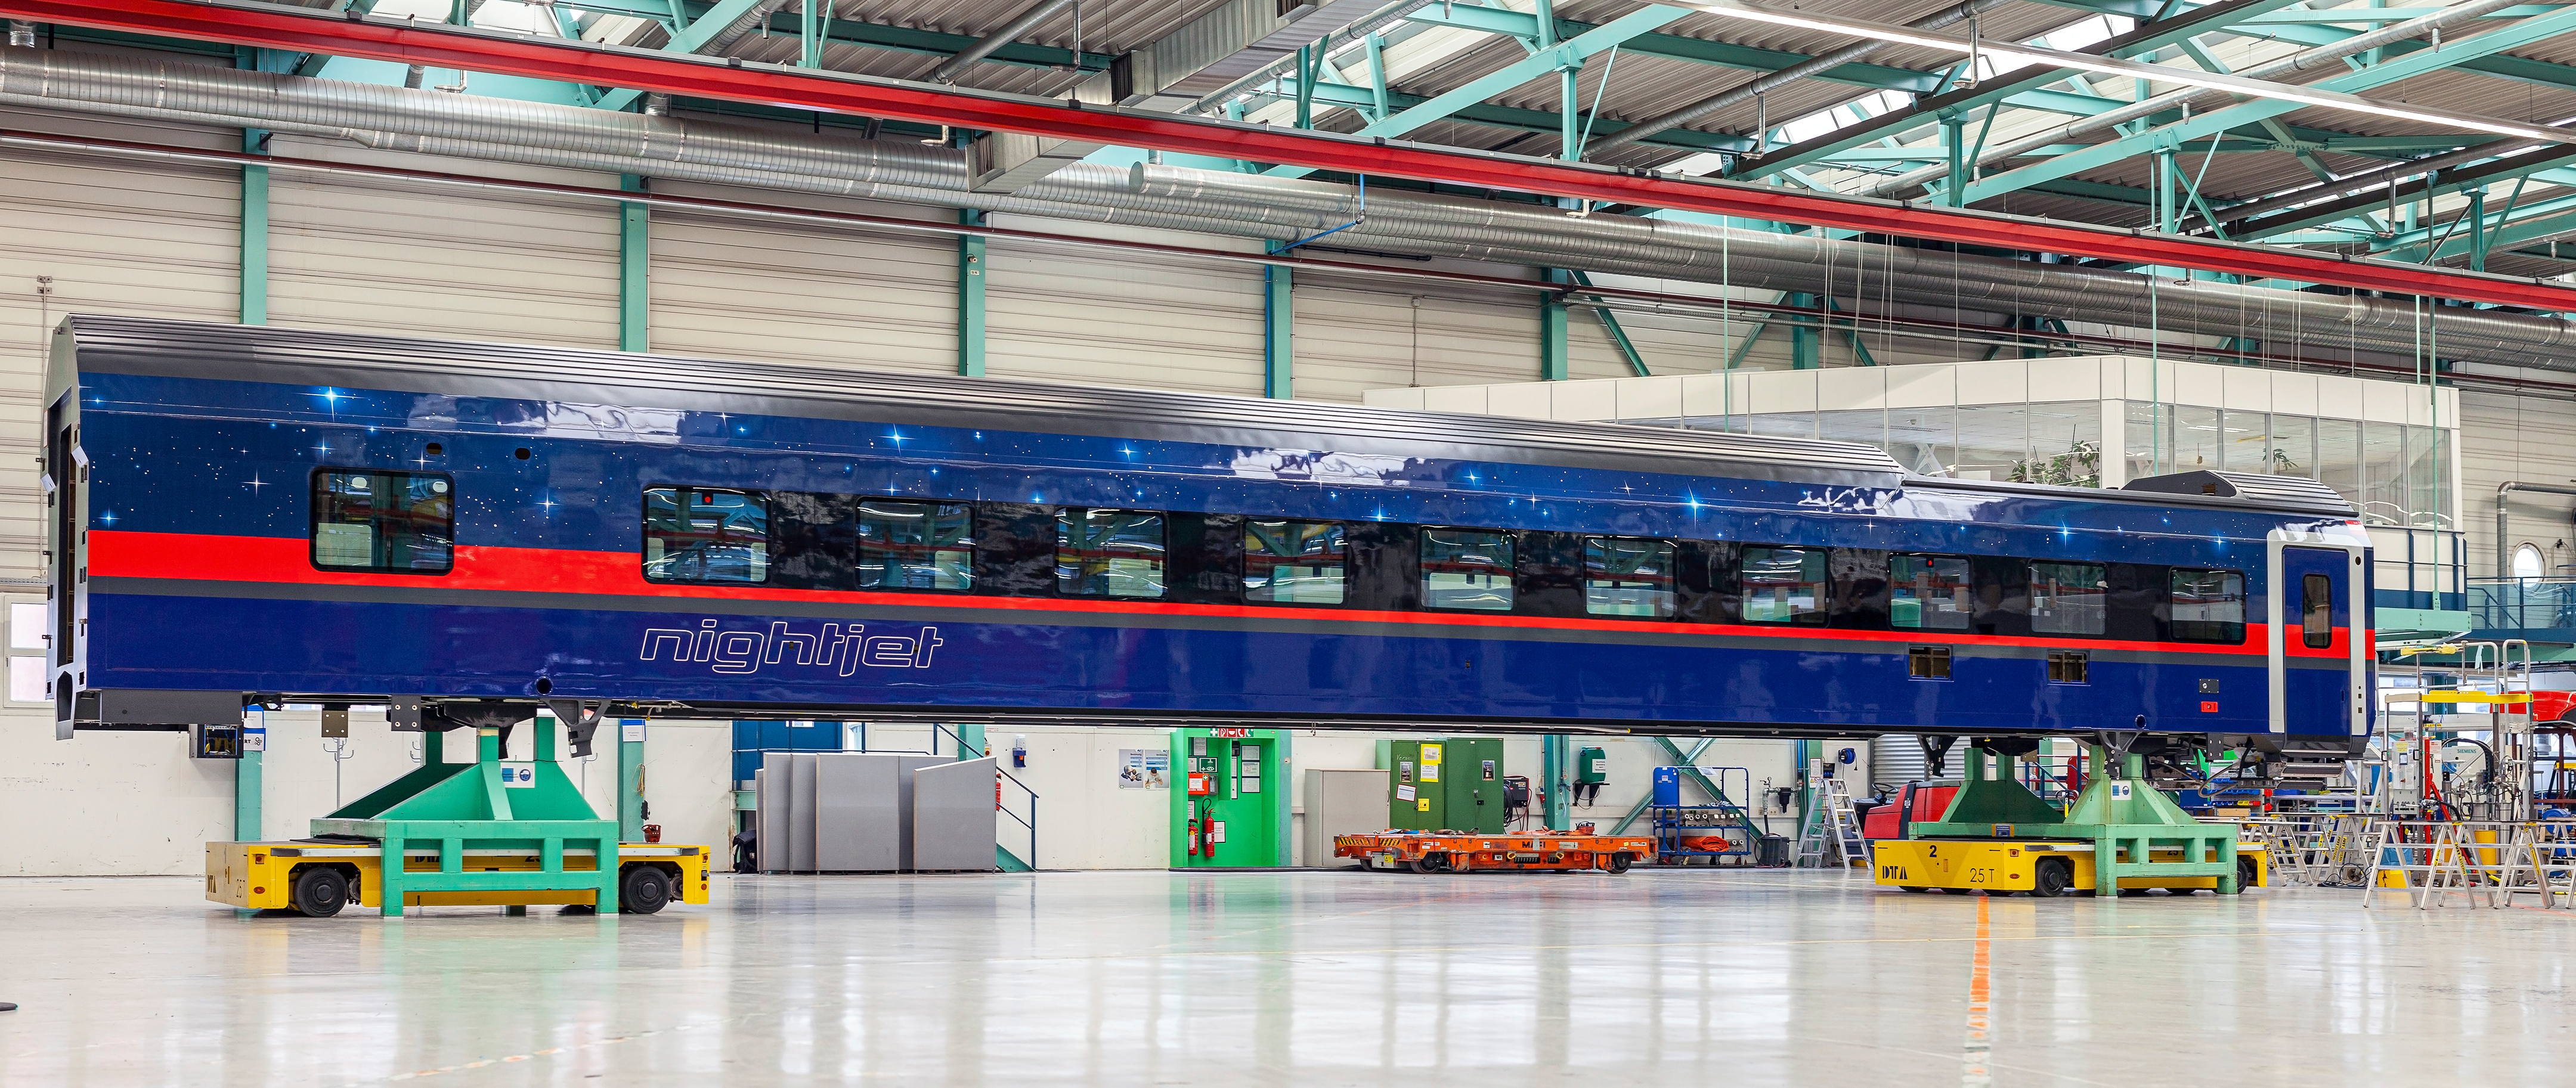 Вагоны дальнего следования Siemens Mobility Viaggio нового поколения на заводе Siemens Mobility в Вене